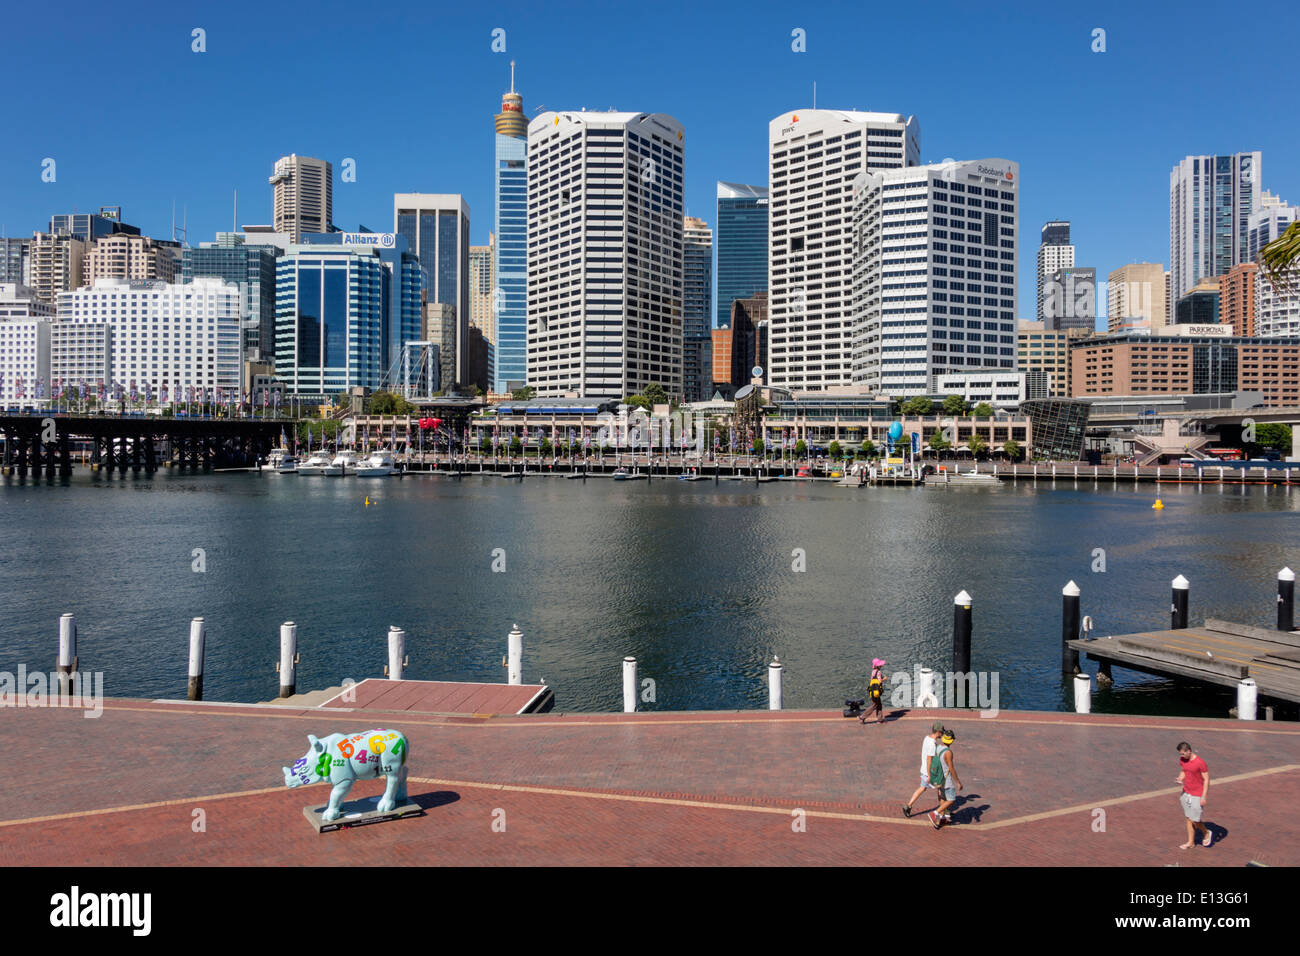 Sydney Australia, Darling Harbour, porto, Cockle Bay Promenade, acqua, grattacieli, skyline della città, Wild! Rhino Sculpture Trail, arte pubblica, AU140311065 Foto Stock